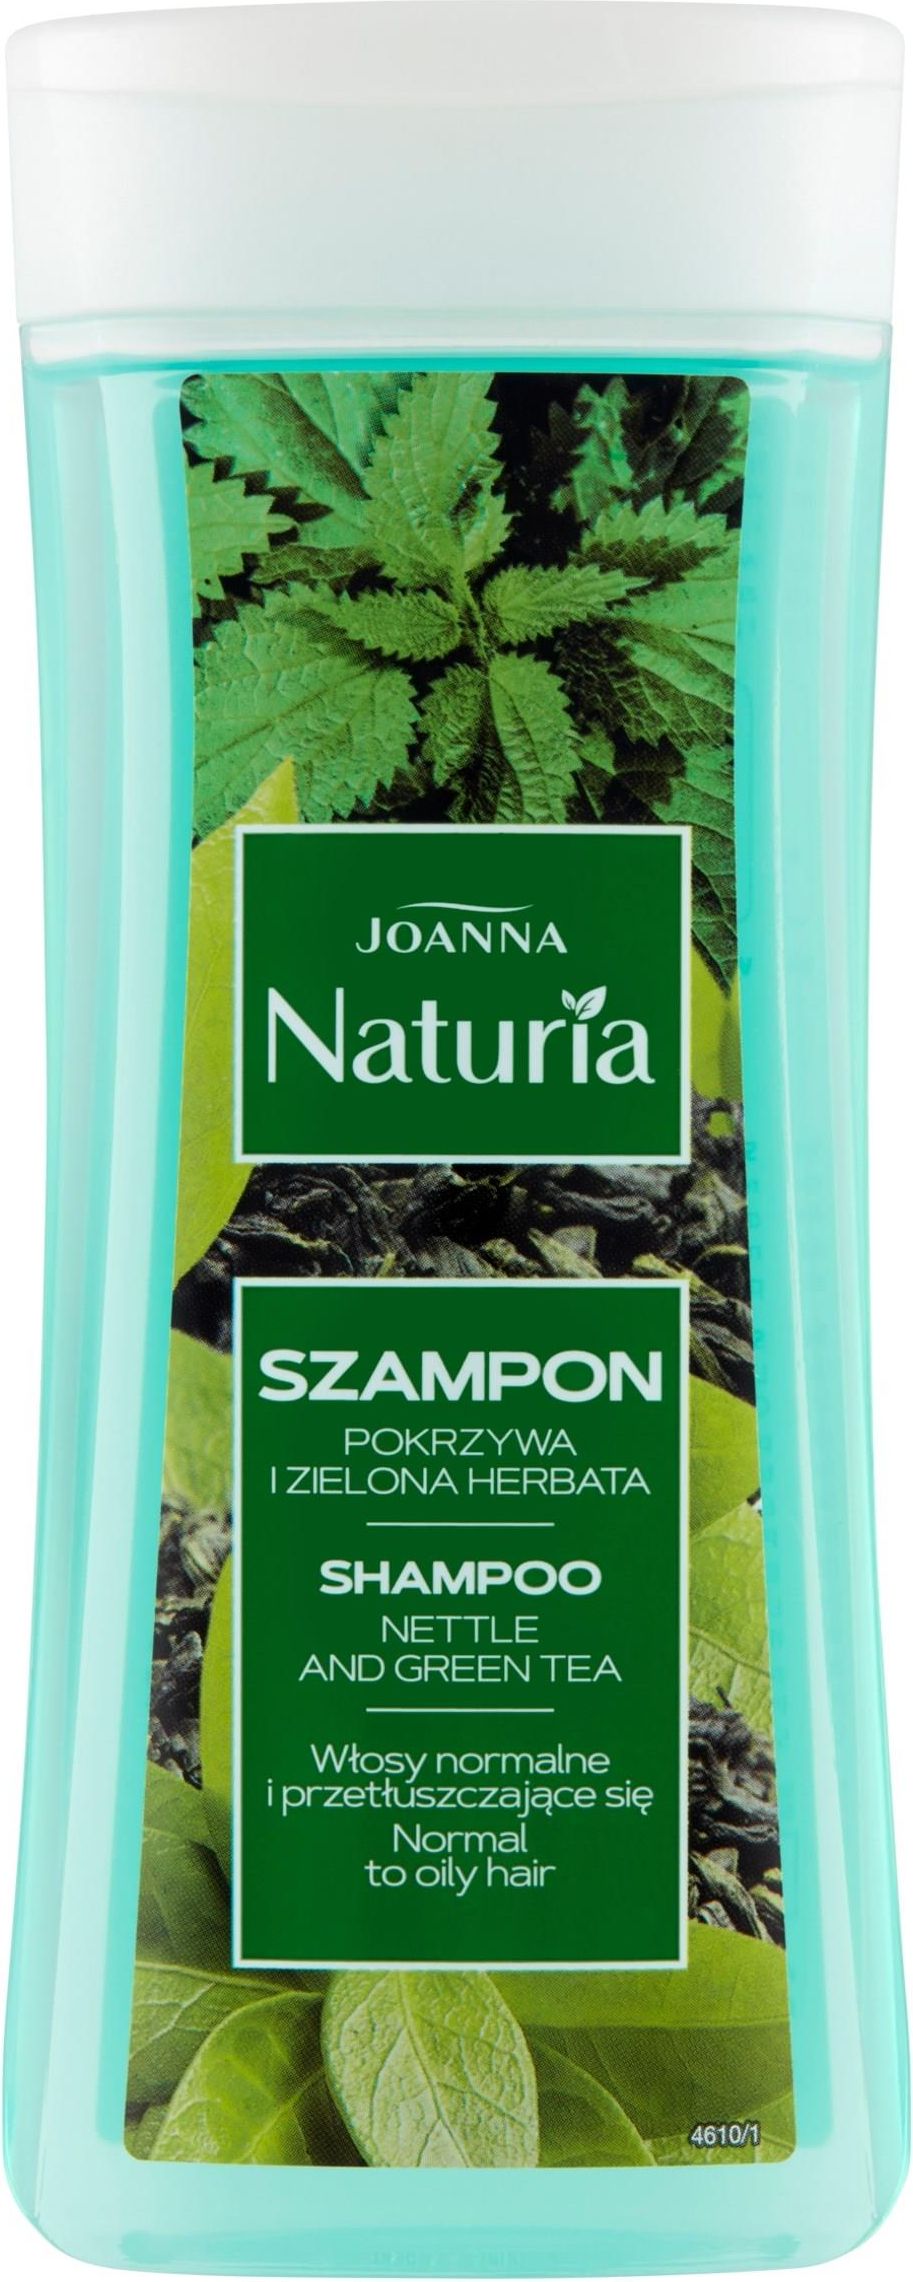 joanna szampon z pokrzywą i zieloną herbatą